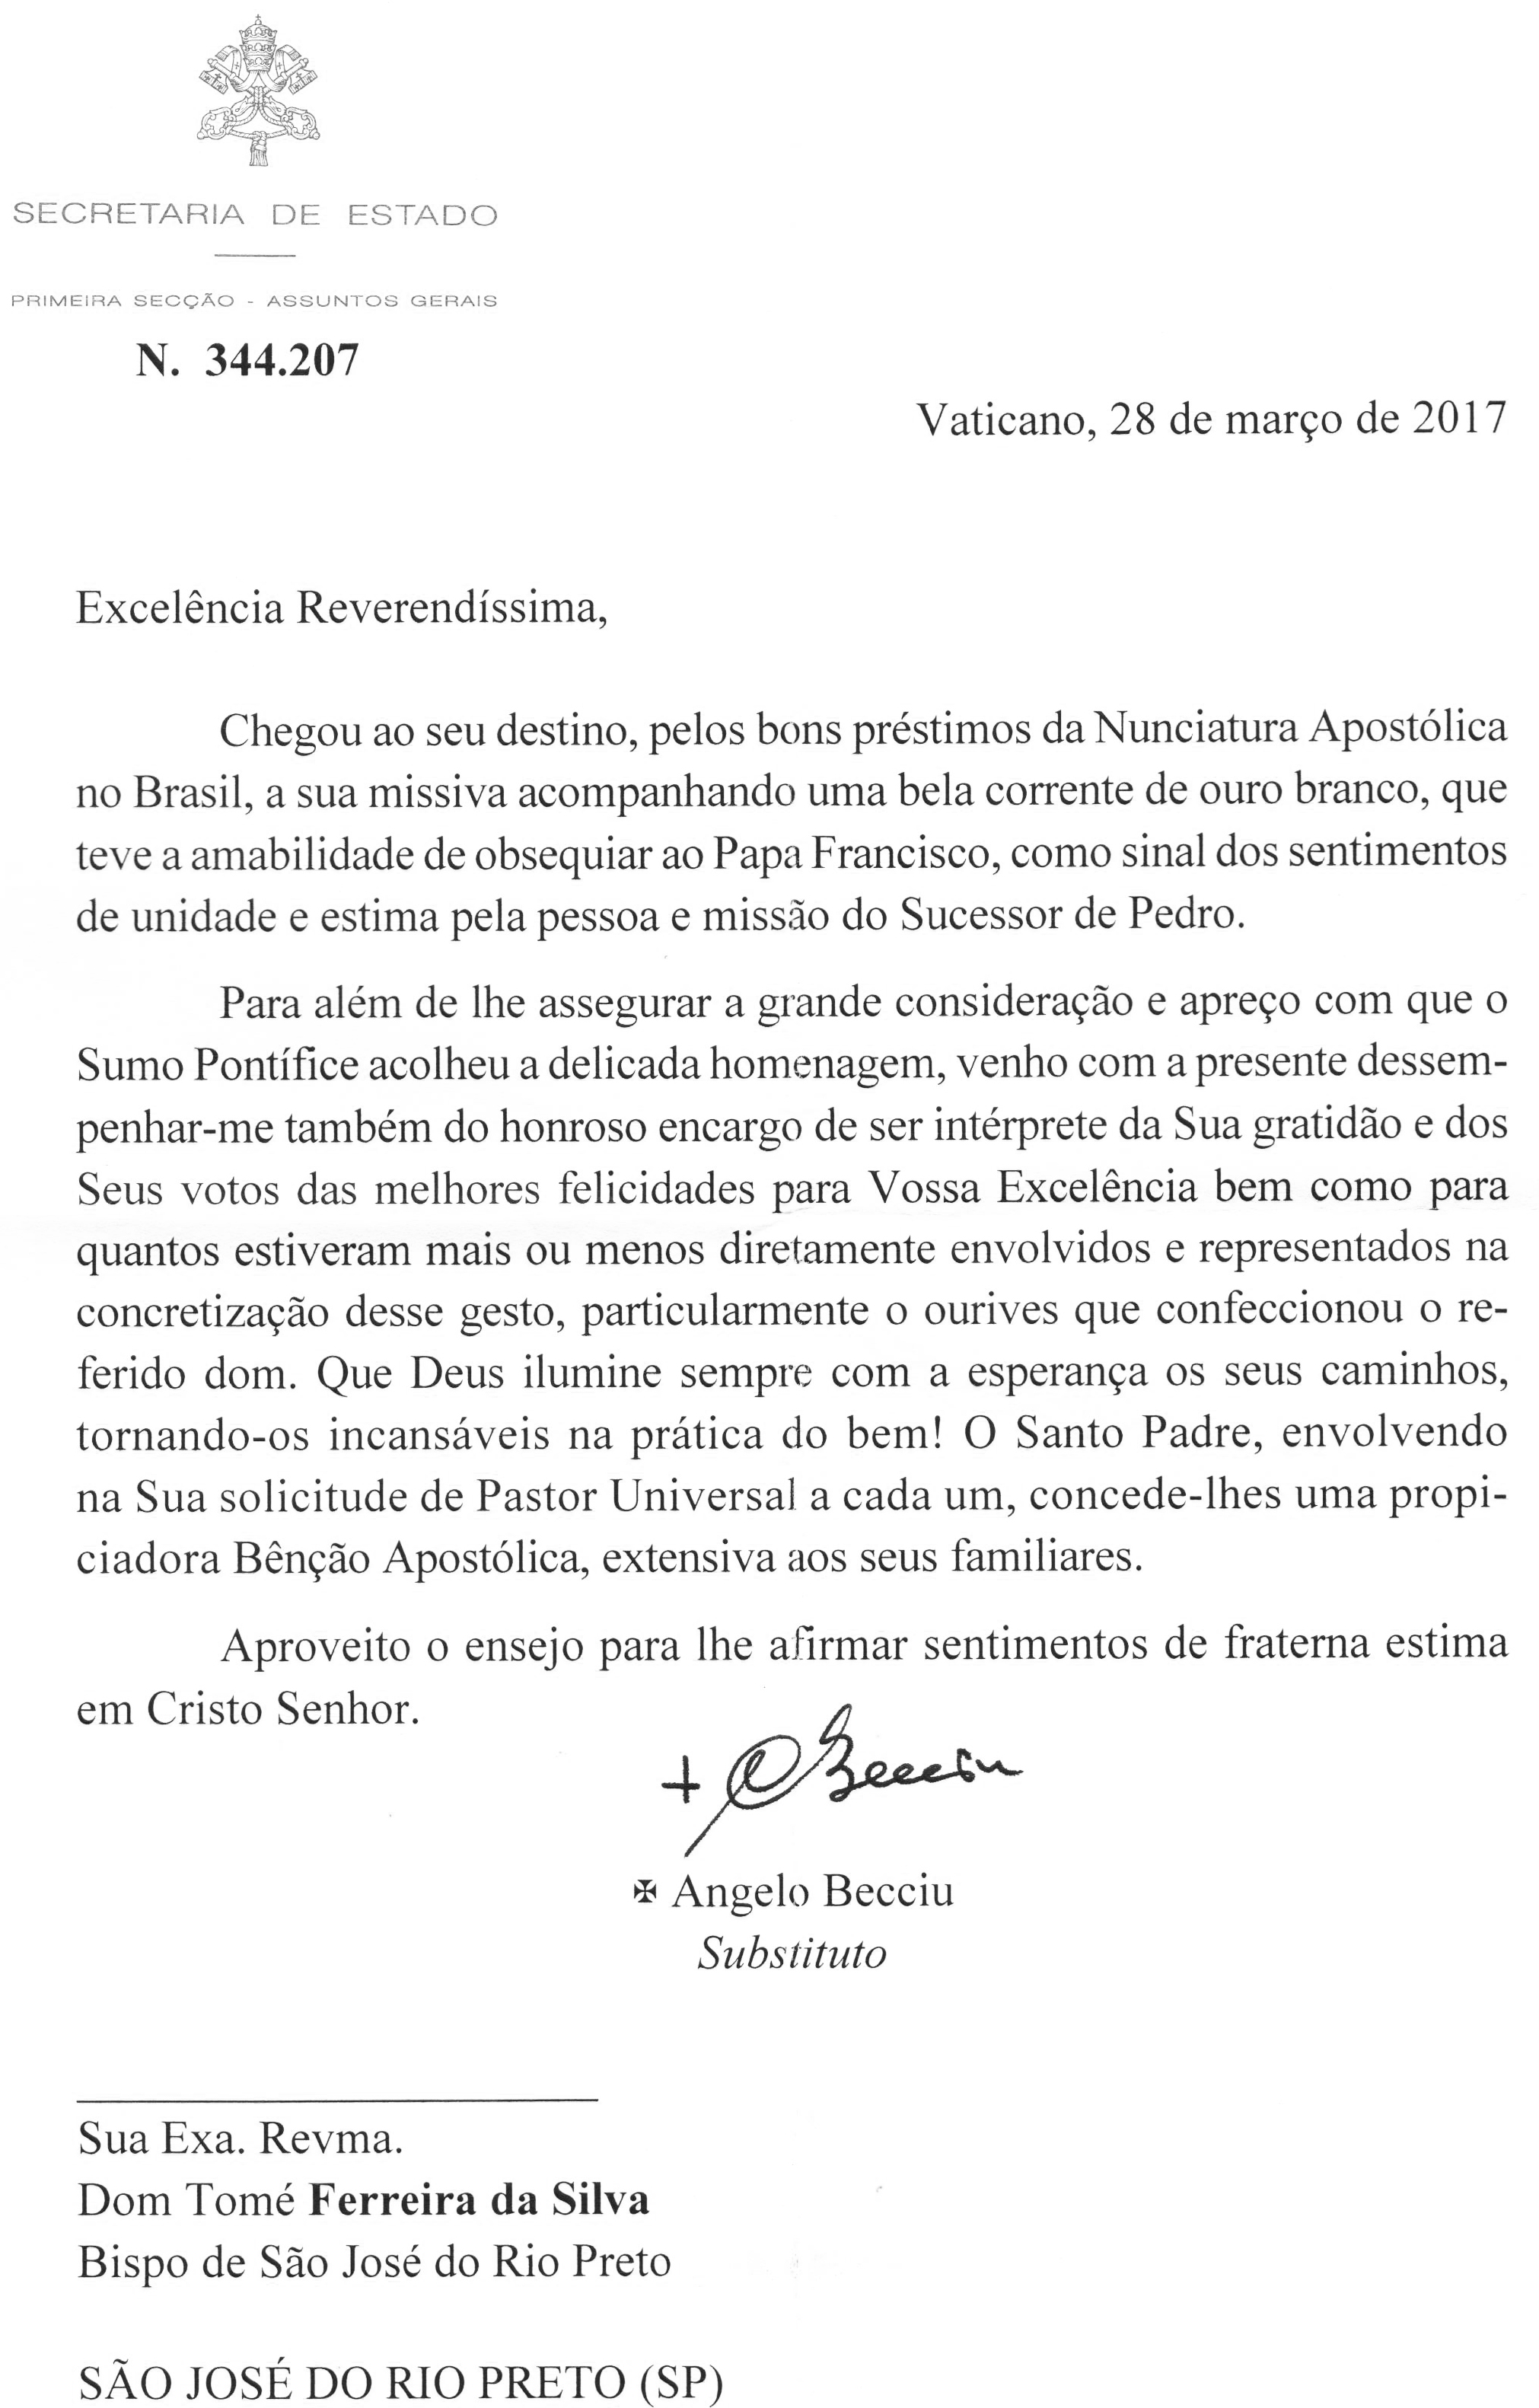 Santa Sé envia carta de agradecimento à Diocese de São José do Rio Preto